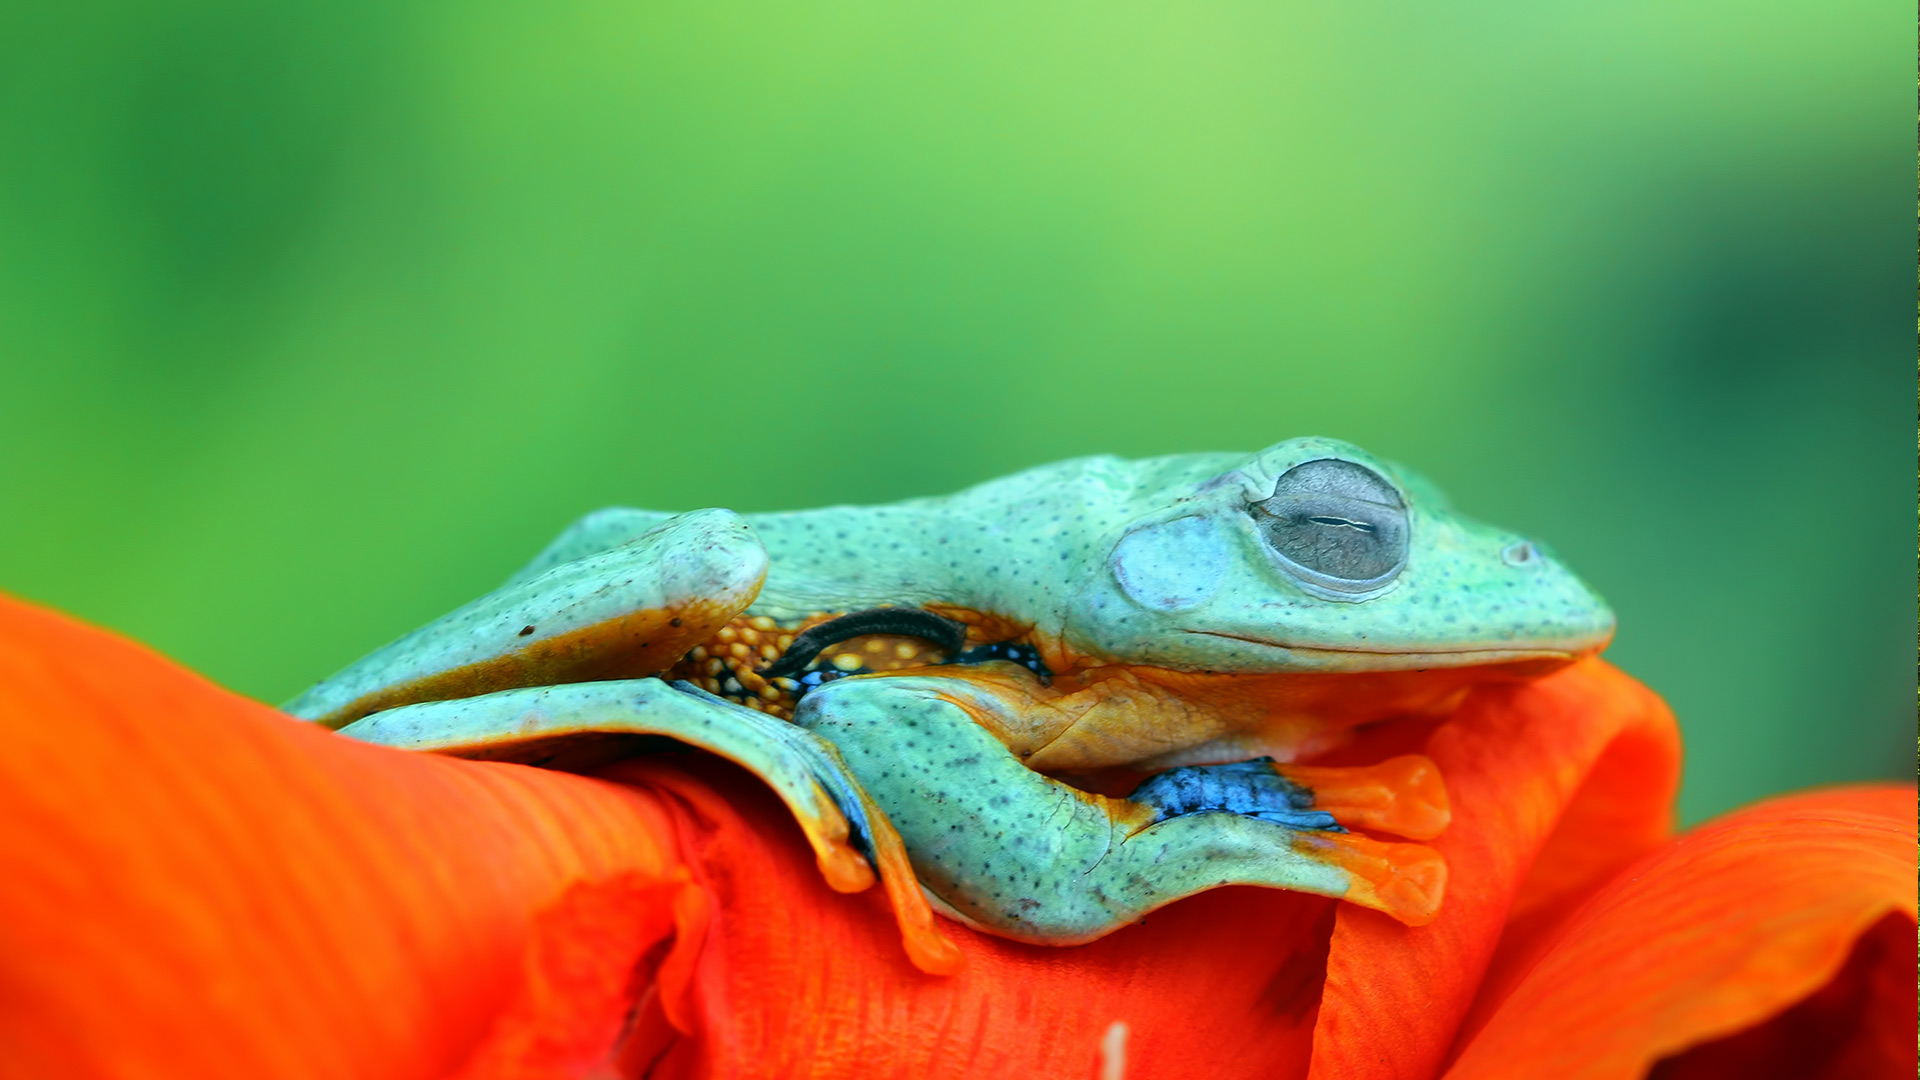 微软壁纸探索世界0401-爪哇树蛙（Java Tree Frog）